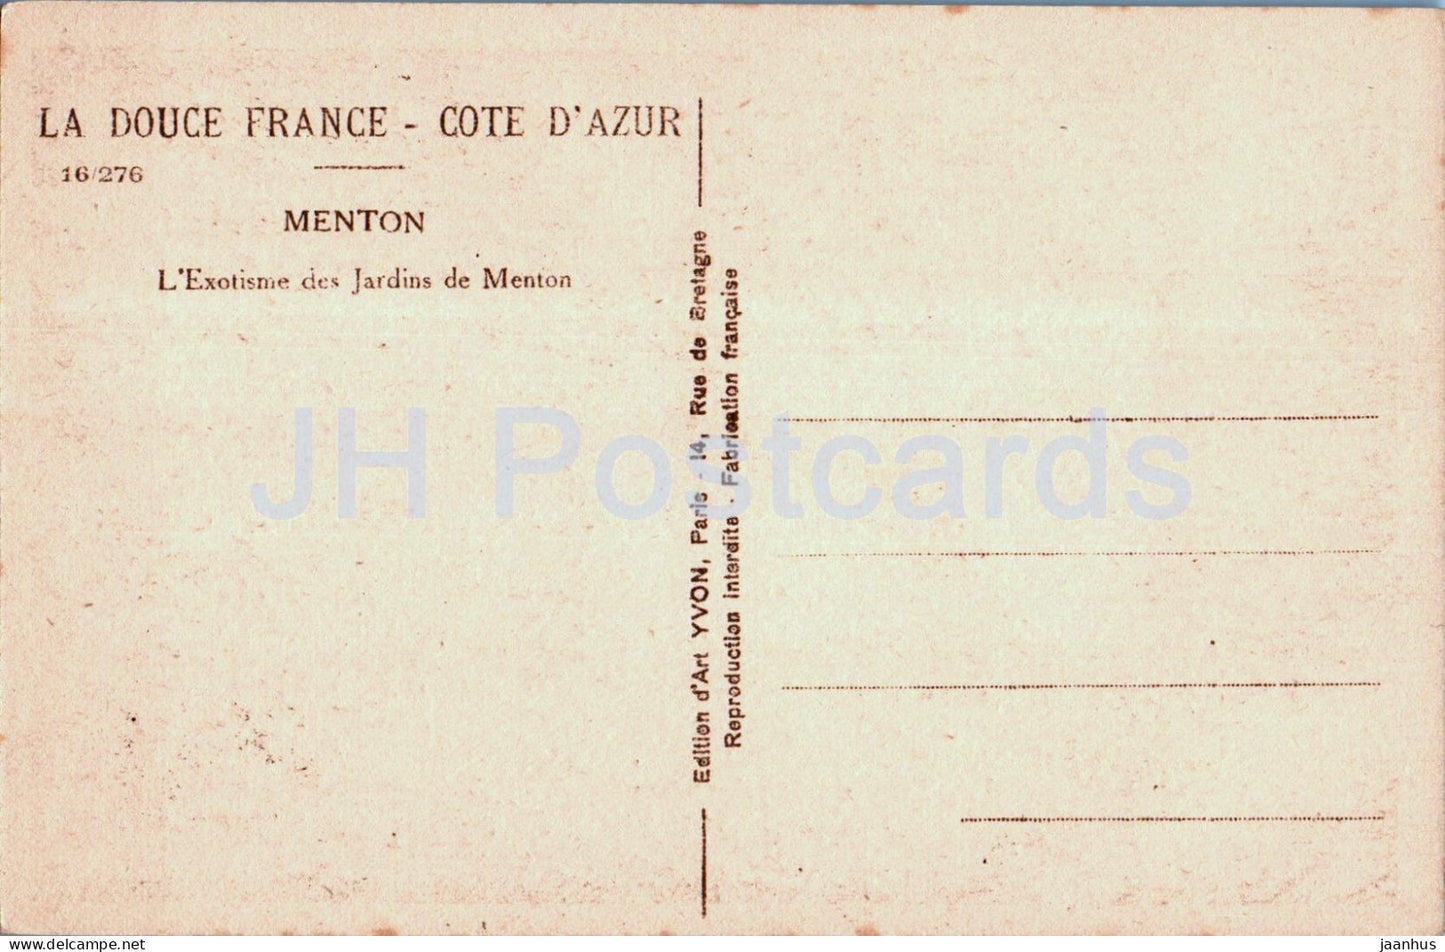 Menton - L'Exotisme des Jardins de Menton - La Douce Frankreich - Côte d'Azur - alte Postkarte - Frankreich - unbenutzt 